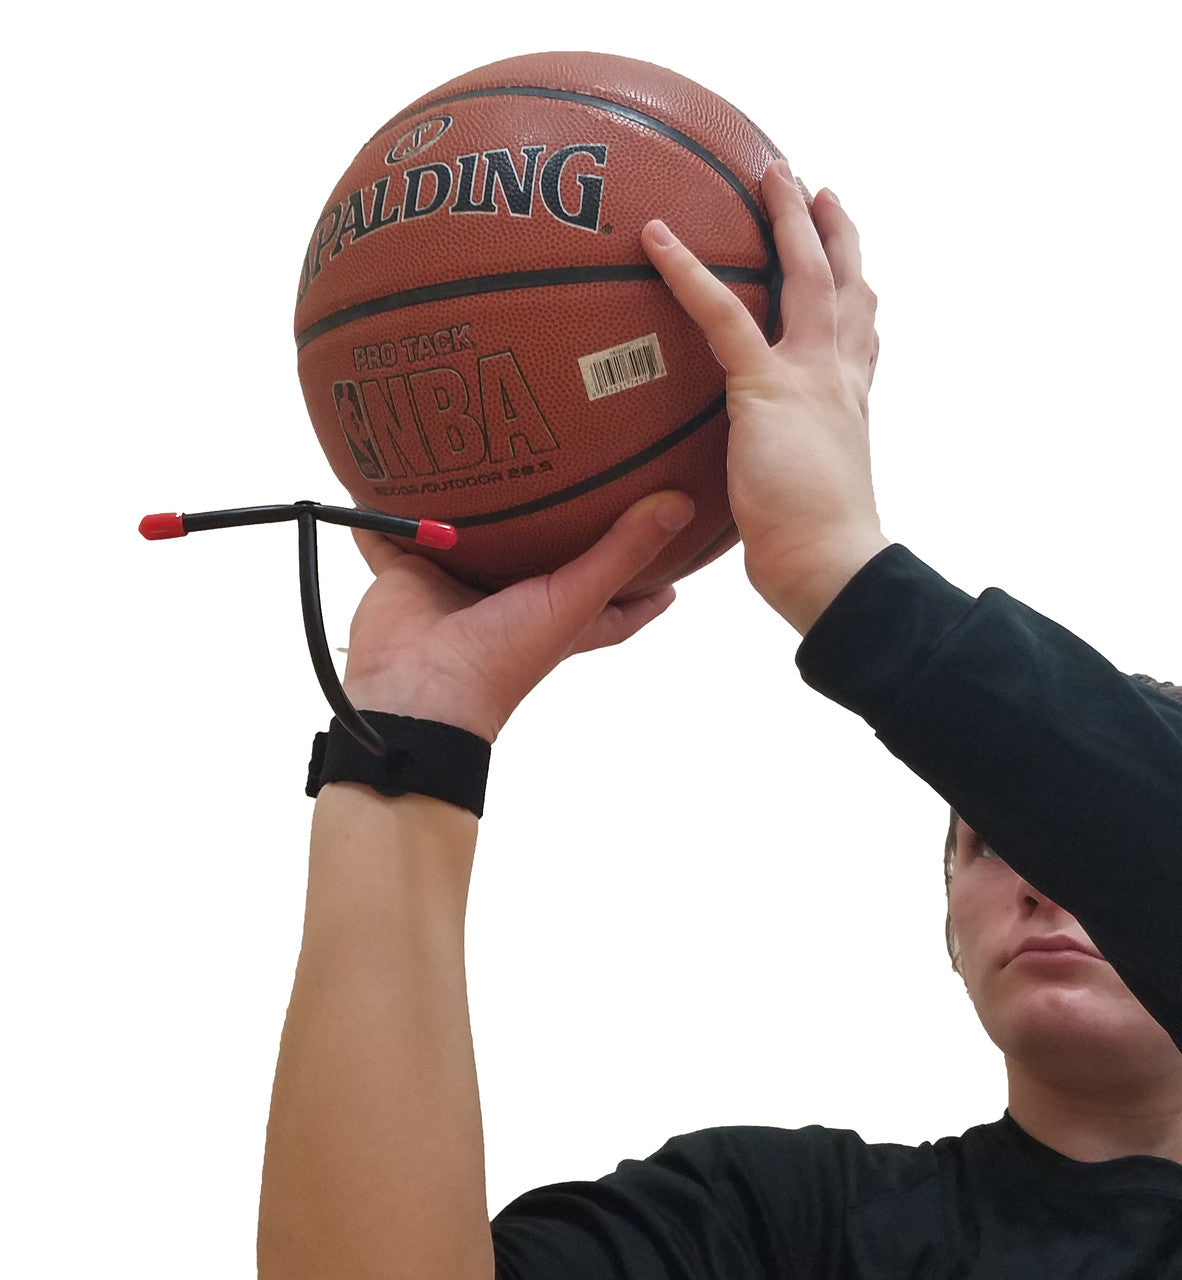 Basketball Shooting Aid to Improve Arc on Shot